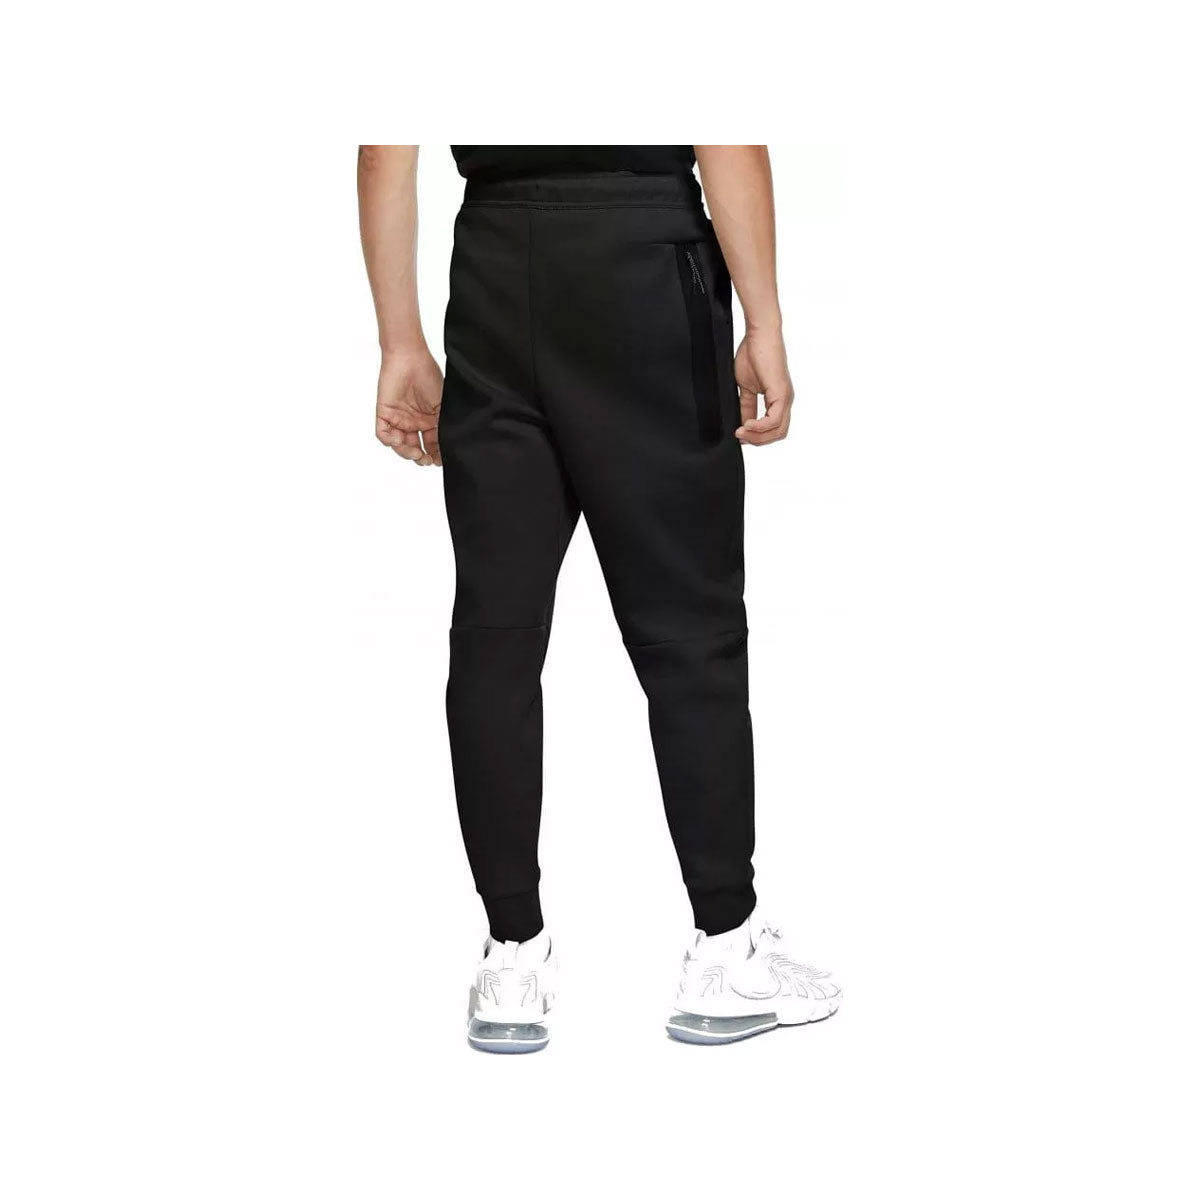 Nike Men's Sportswear Tech Fleece Joggers Black